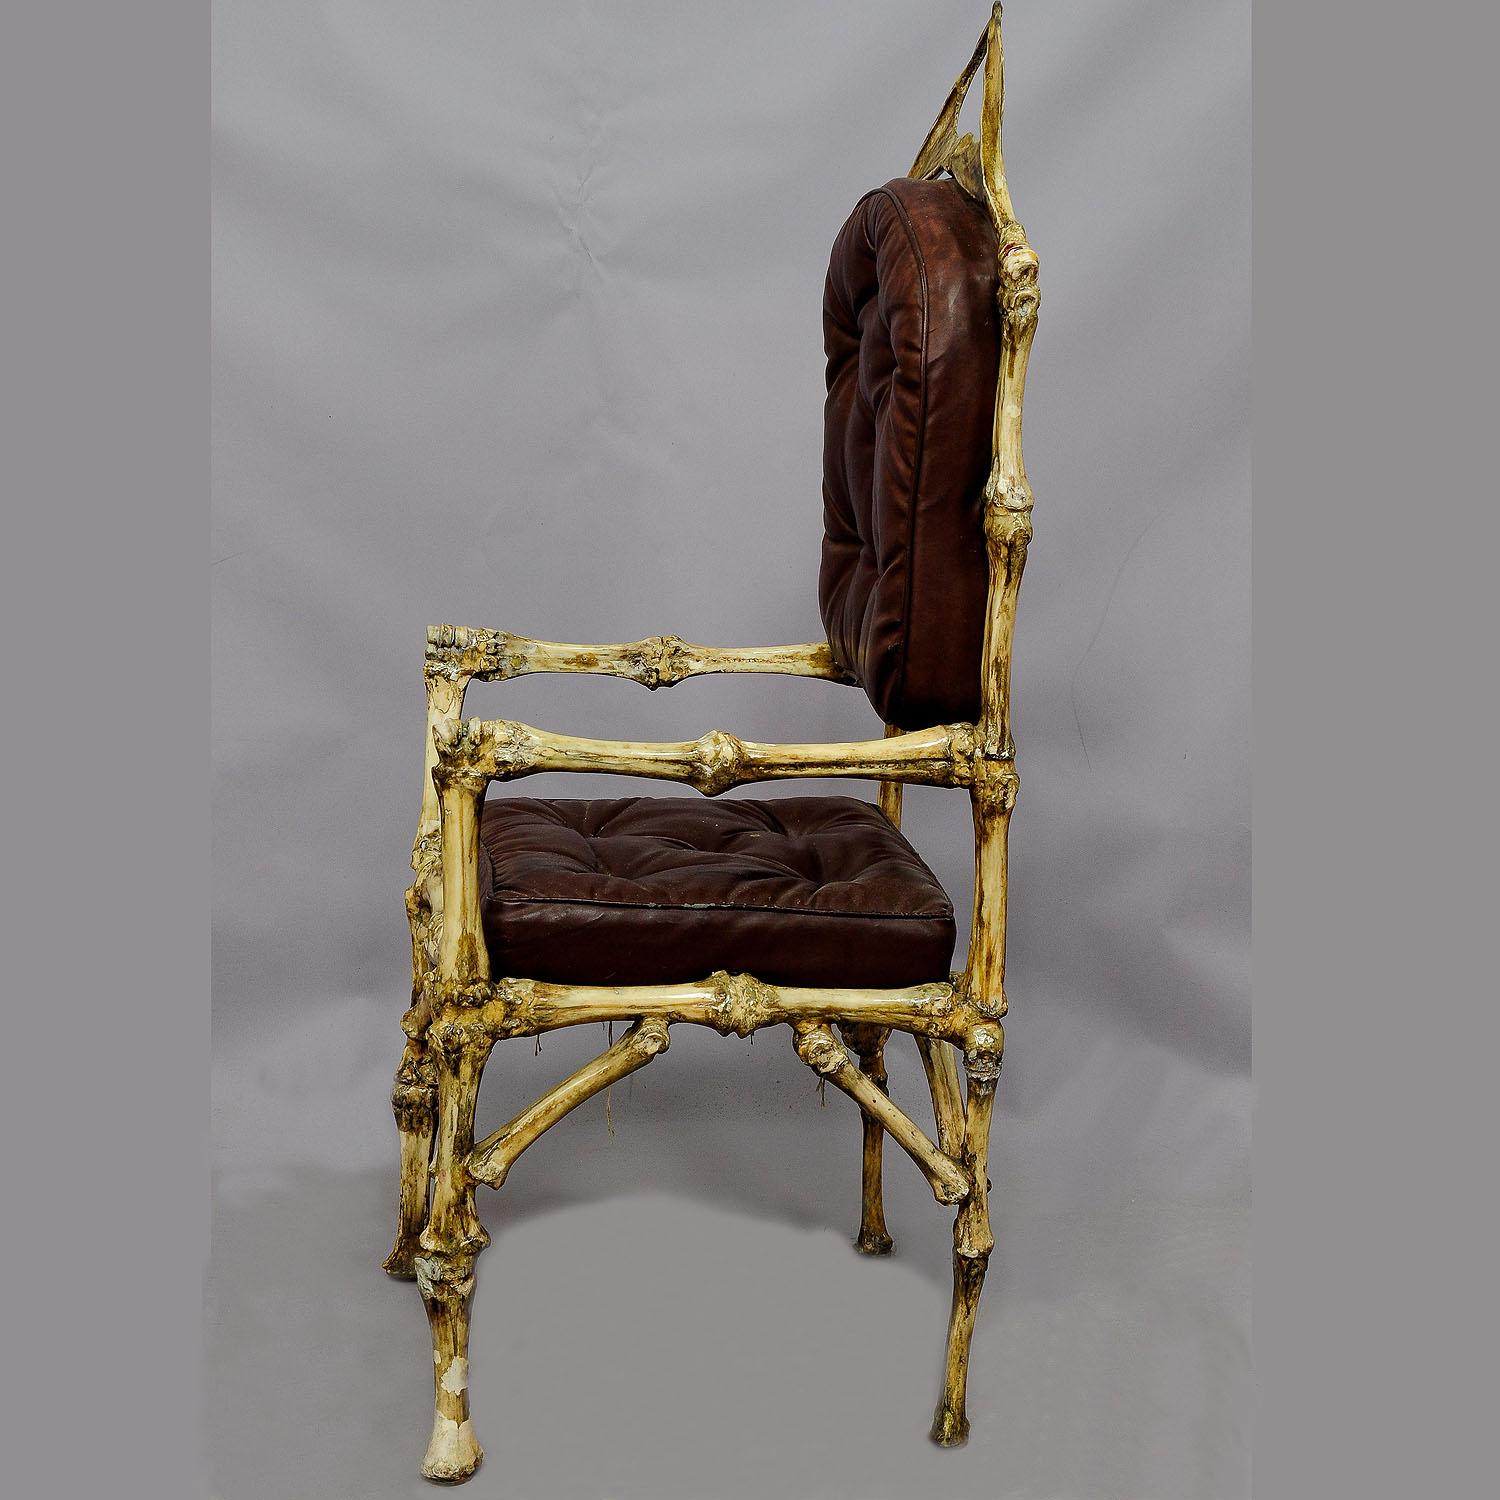 Un grand meuble de fantaisie - une chaise de trône faite d'os originaux de bovins femelles (Bos taurus). Toutes les pièces sont fabriquées à partir de véritables os de bovins collés les uns aux autres à l'aide de tiges de fer. La chaise comporte des